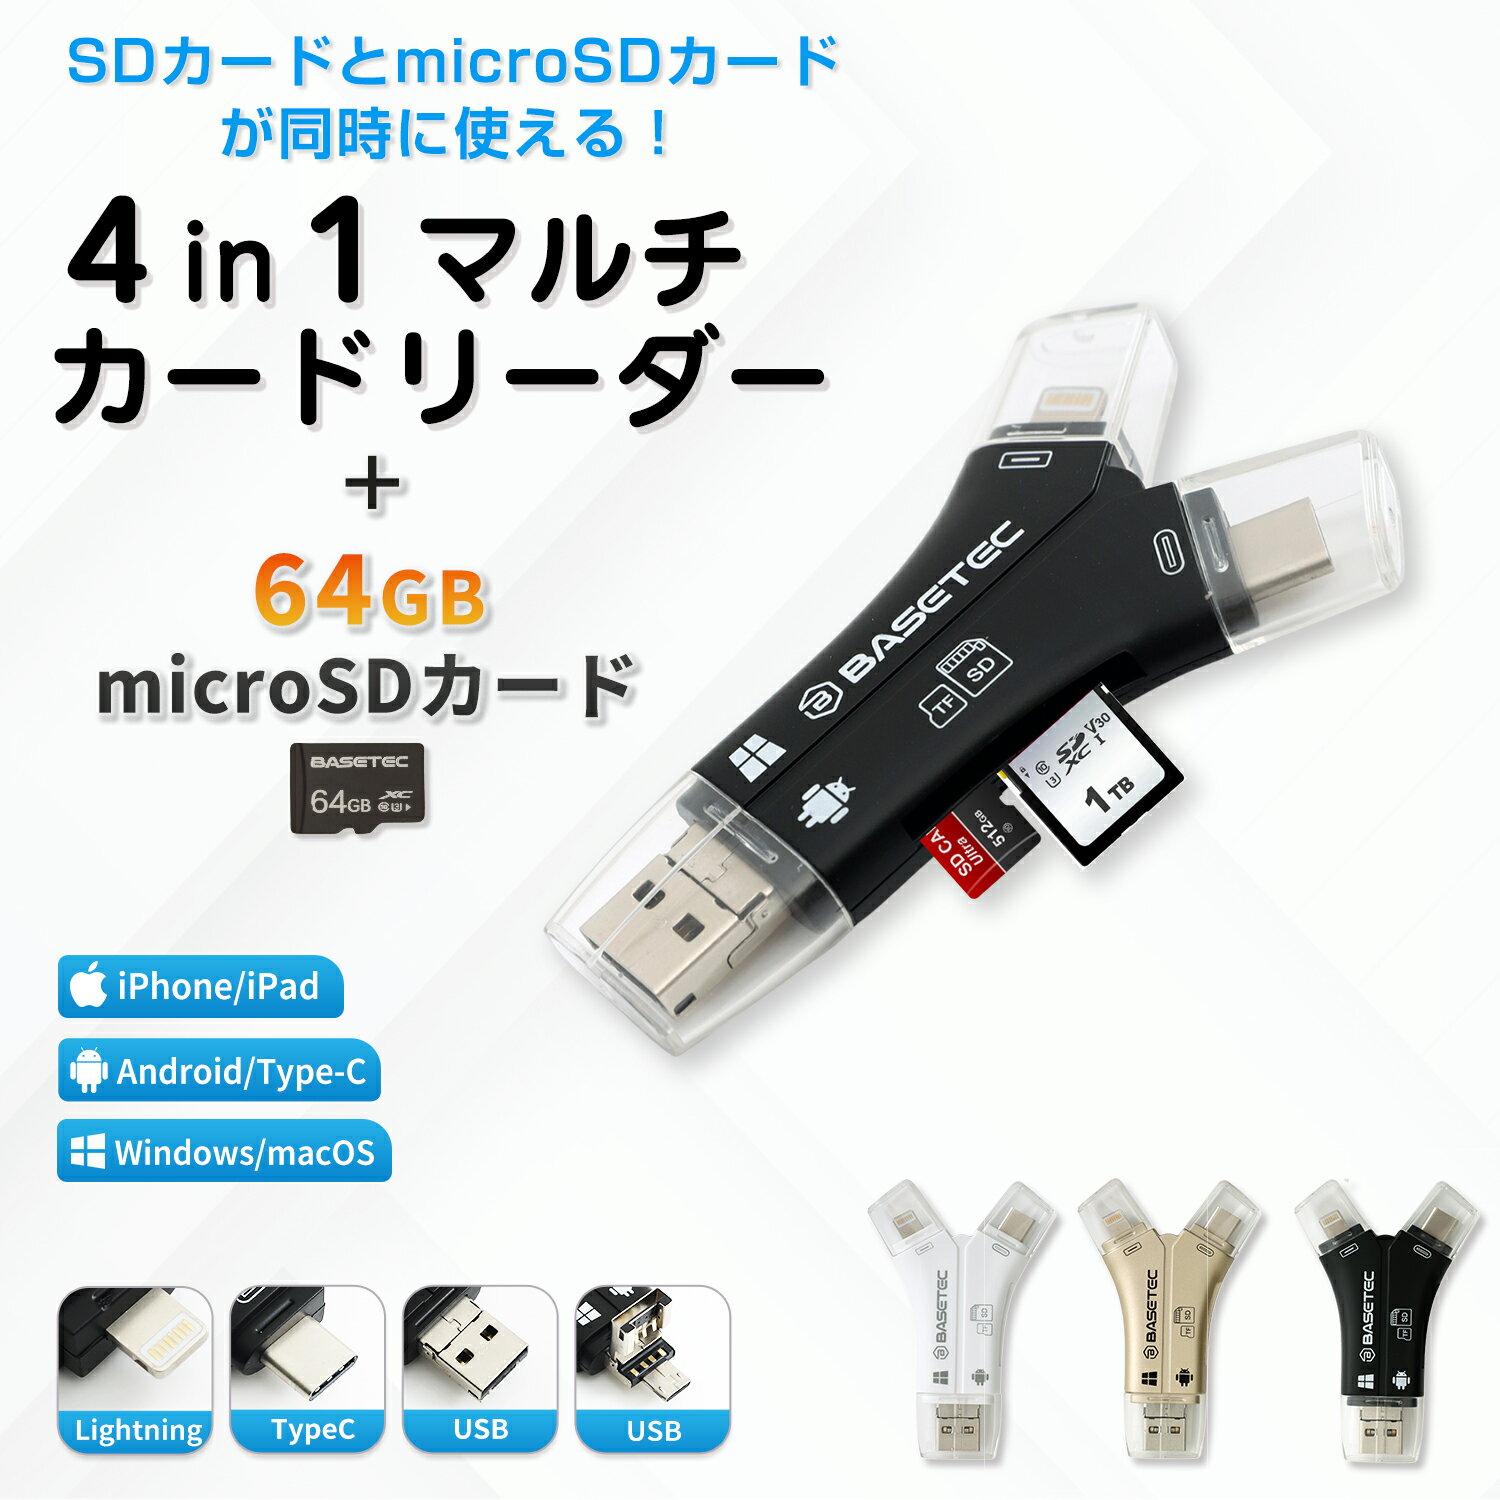 【SDカード 64GBセット】【ベーステック正規品】【BASETEC 正規品 1TB対応 】 4in1 SDカードリーダー カメラリーダー iPhoneバックアップ SDカードカメラリーダー スマホカードリーダー microsdカードリーダー カードリーダー EC